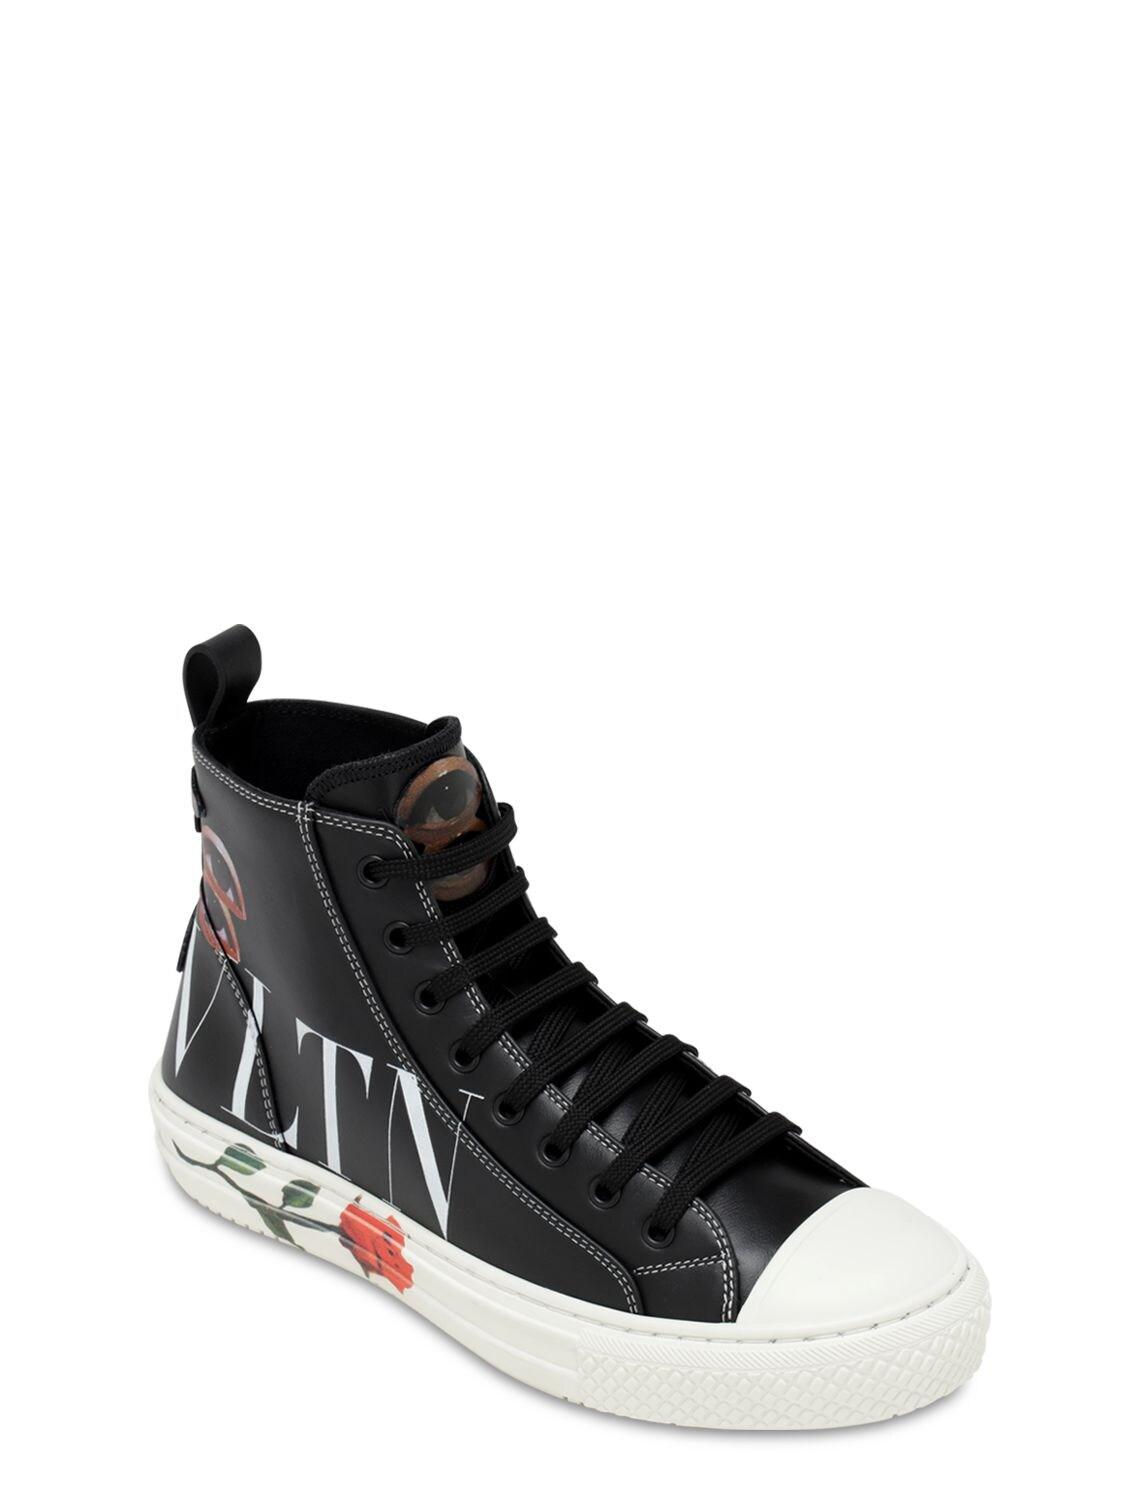 Valentino Garavani Vltn Printed Hi-top Leather Sneakers in Black for ...